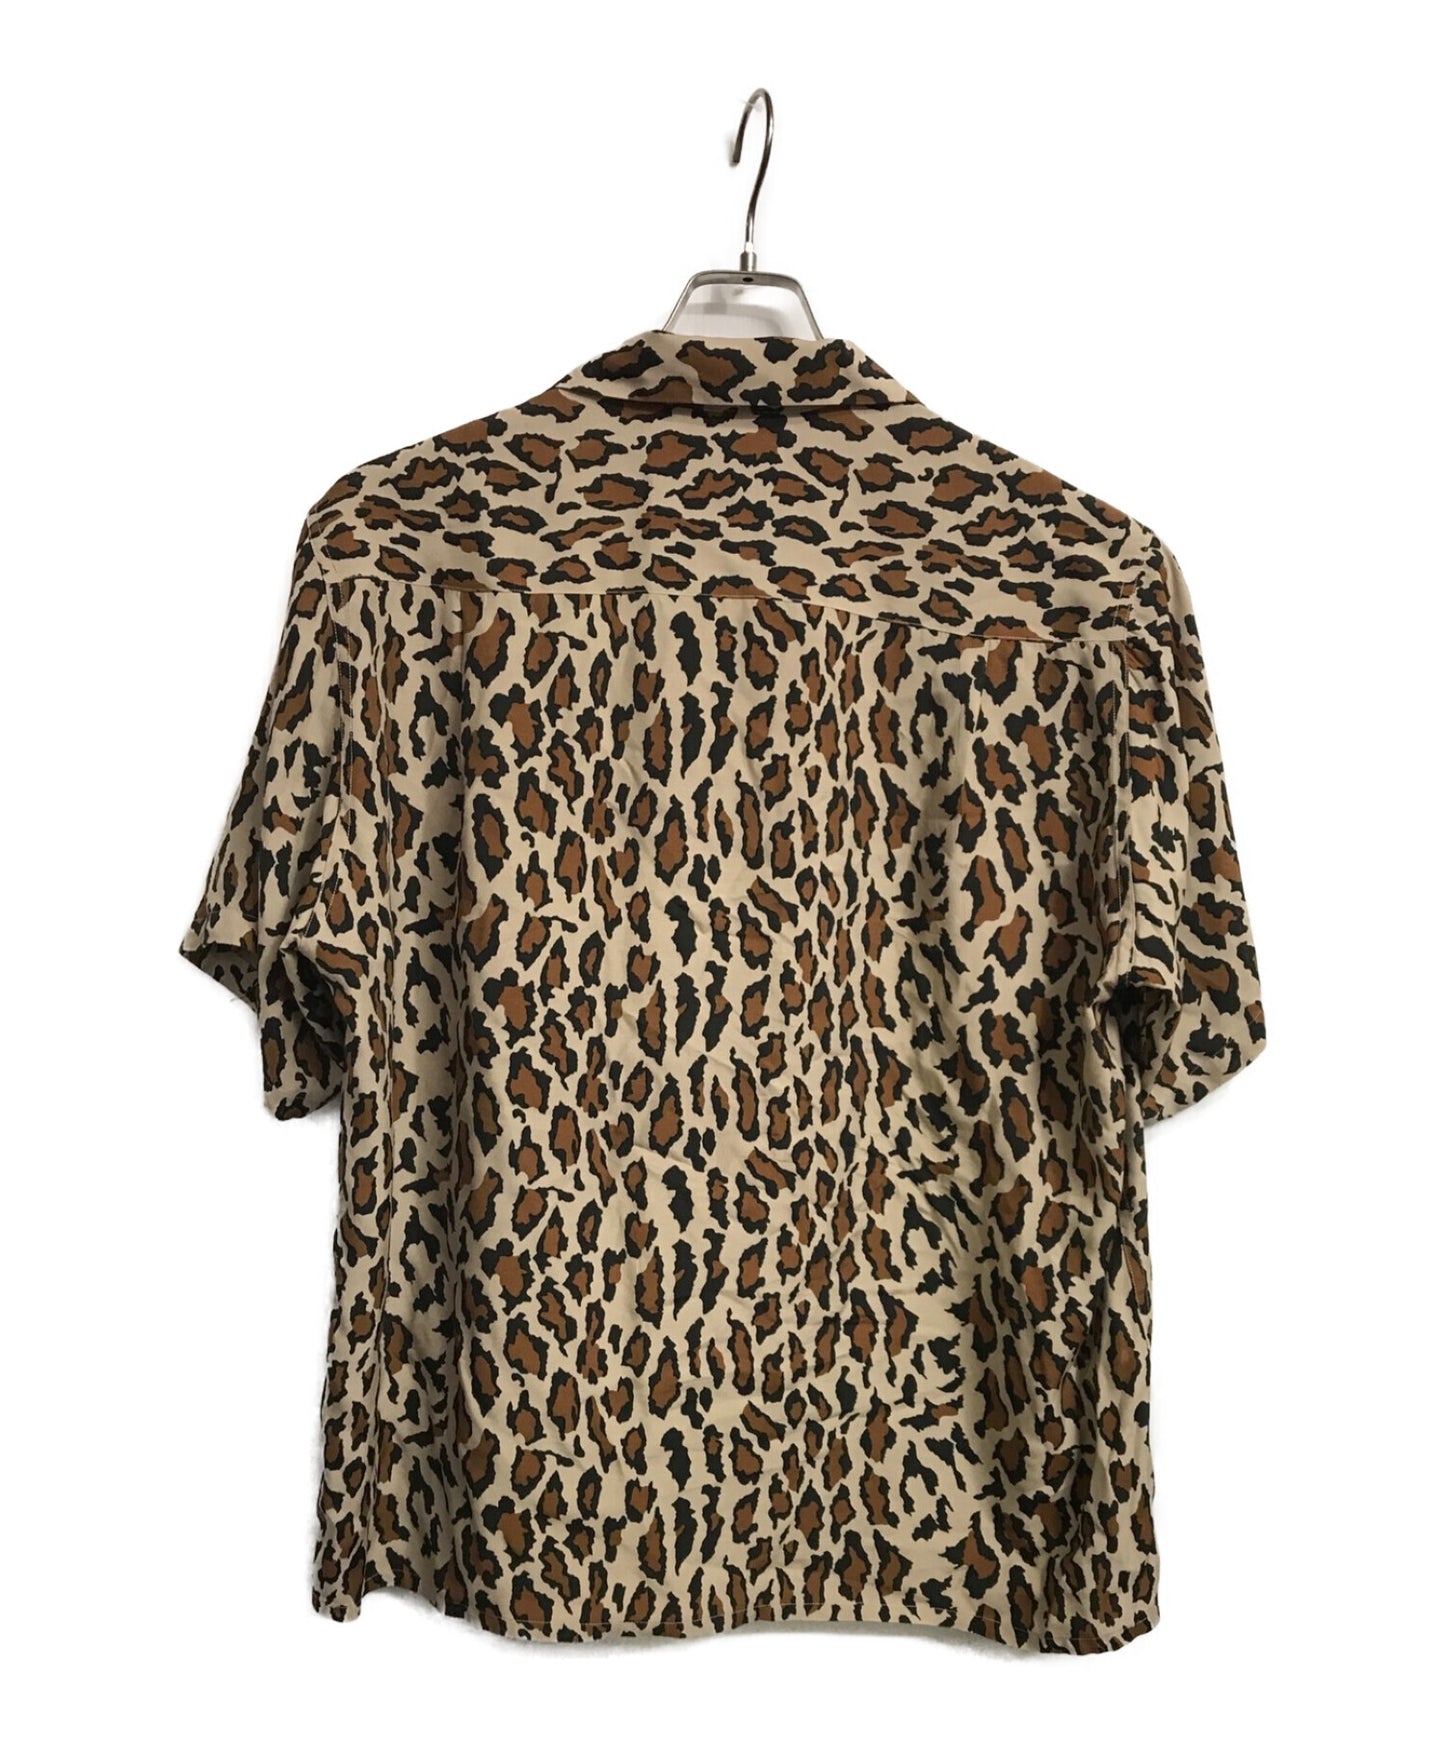 Wacko Maria Leopard夏威夷襯衫22SS-WMS-HI06